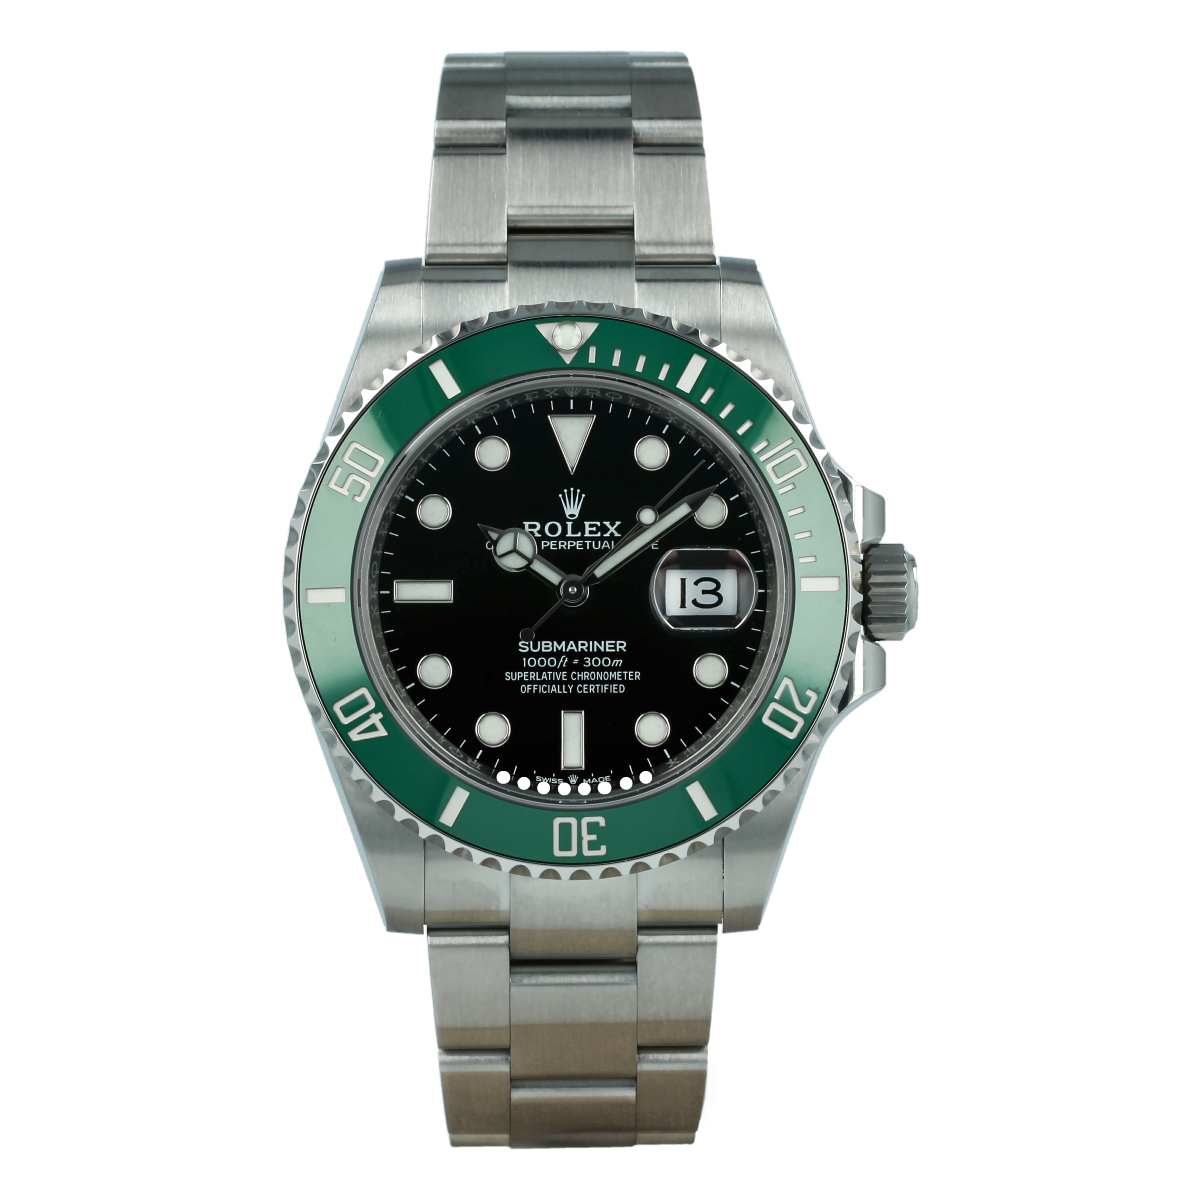 Rolex Submariner Date (126610 LV)